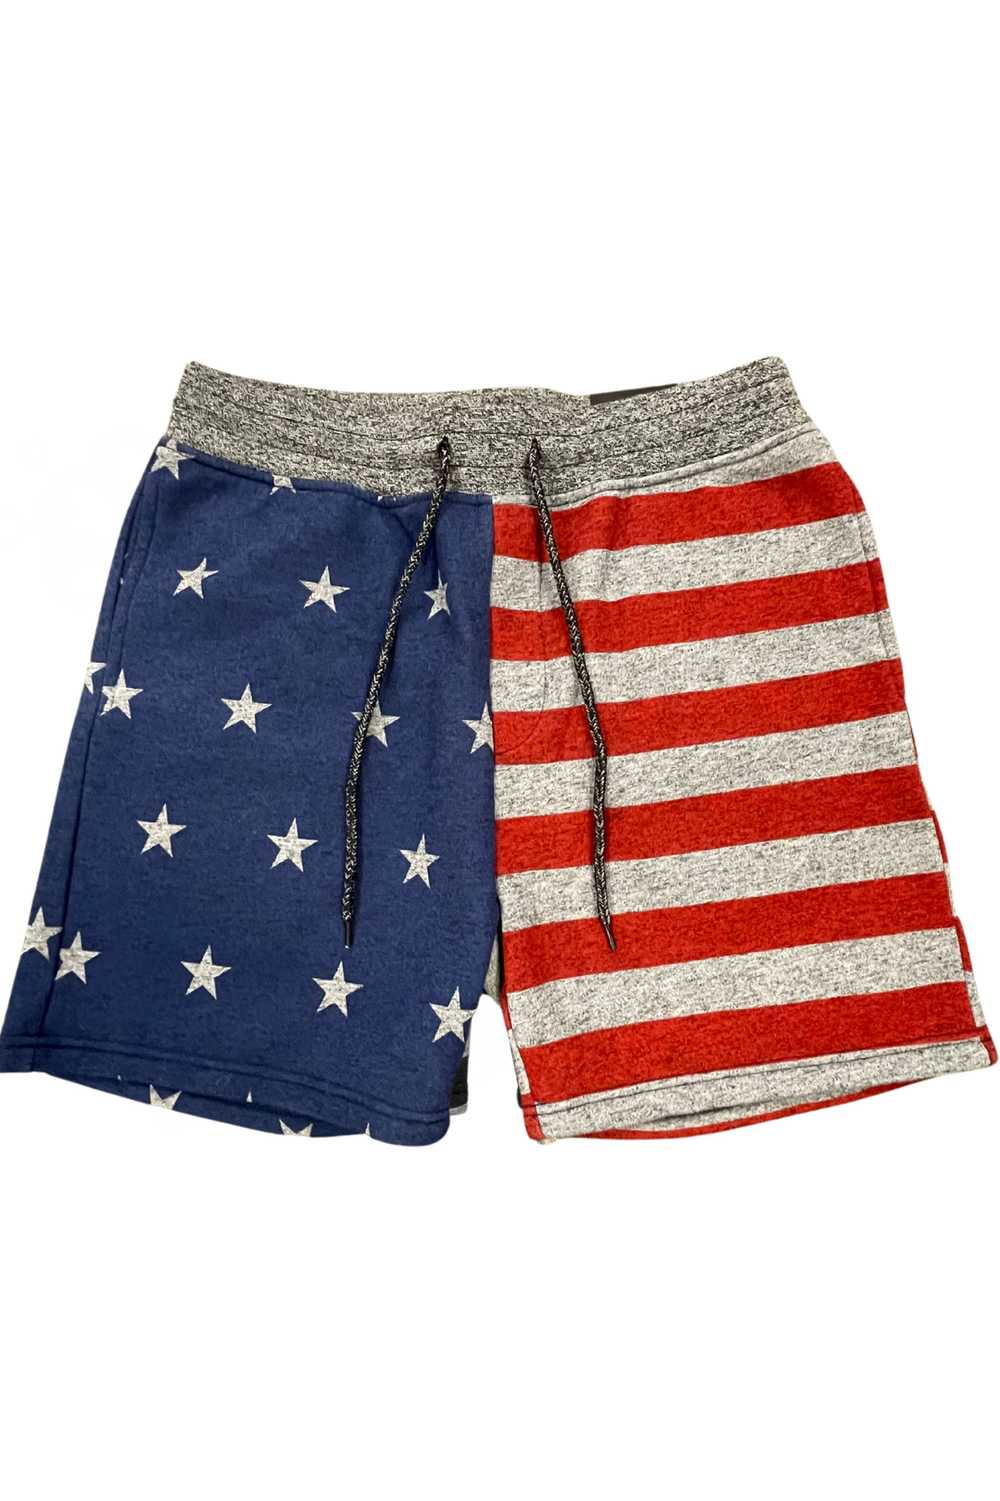 Brooklyn Cloth 5" USA shorts - image 1